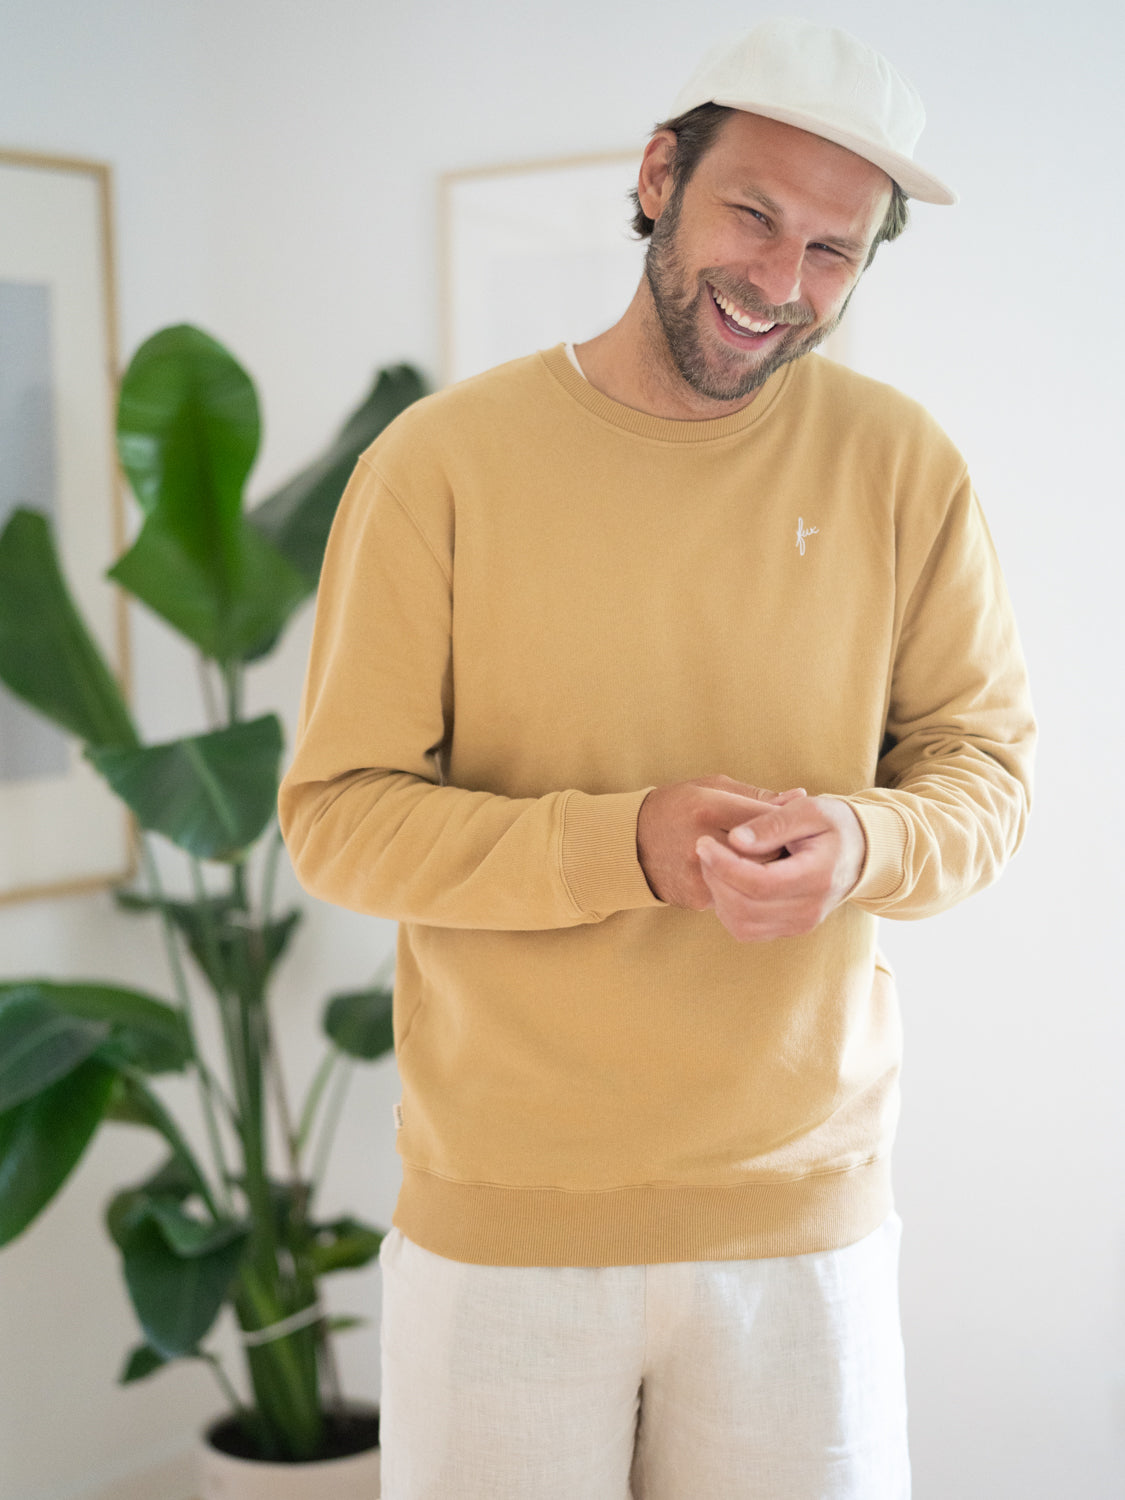 Philipp trägt den Friendly Fabrics Männer Sweater in senfgelb, der aus Reststoffen gefertigt wird.